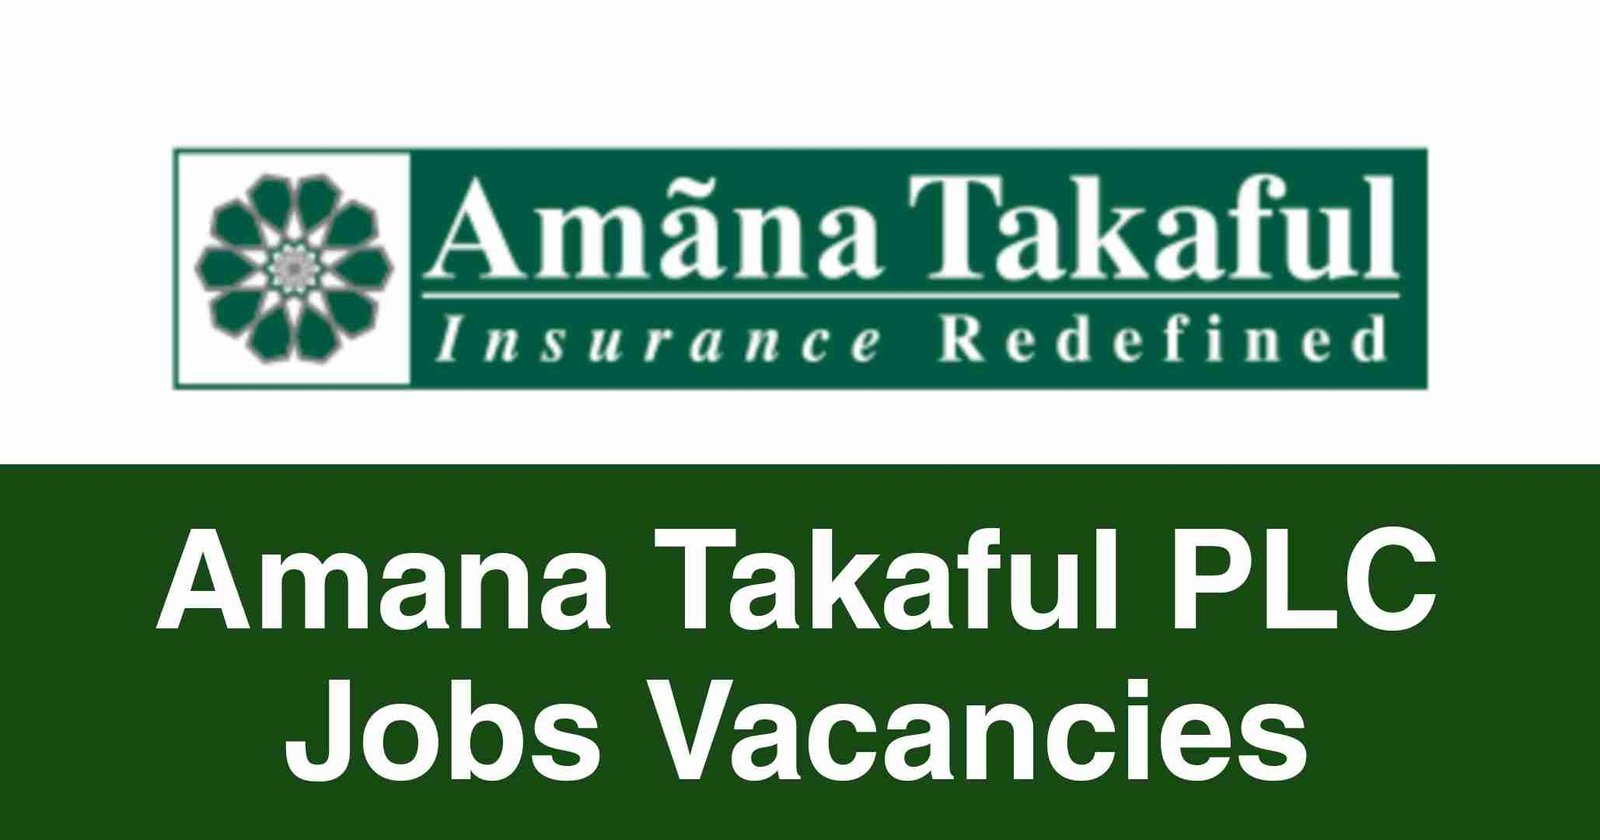 Amana Takaful PLC Jobs Vacancies